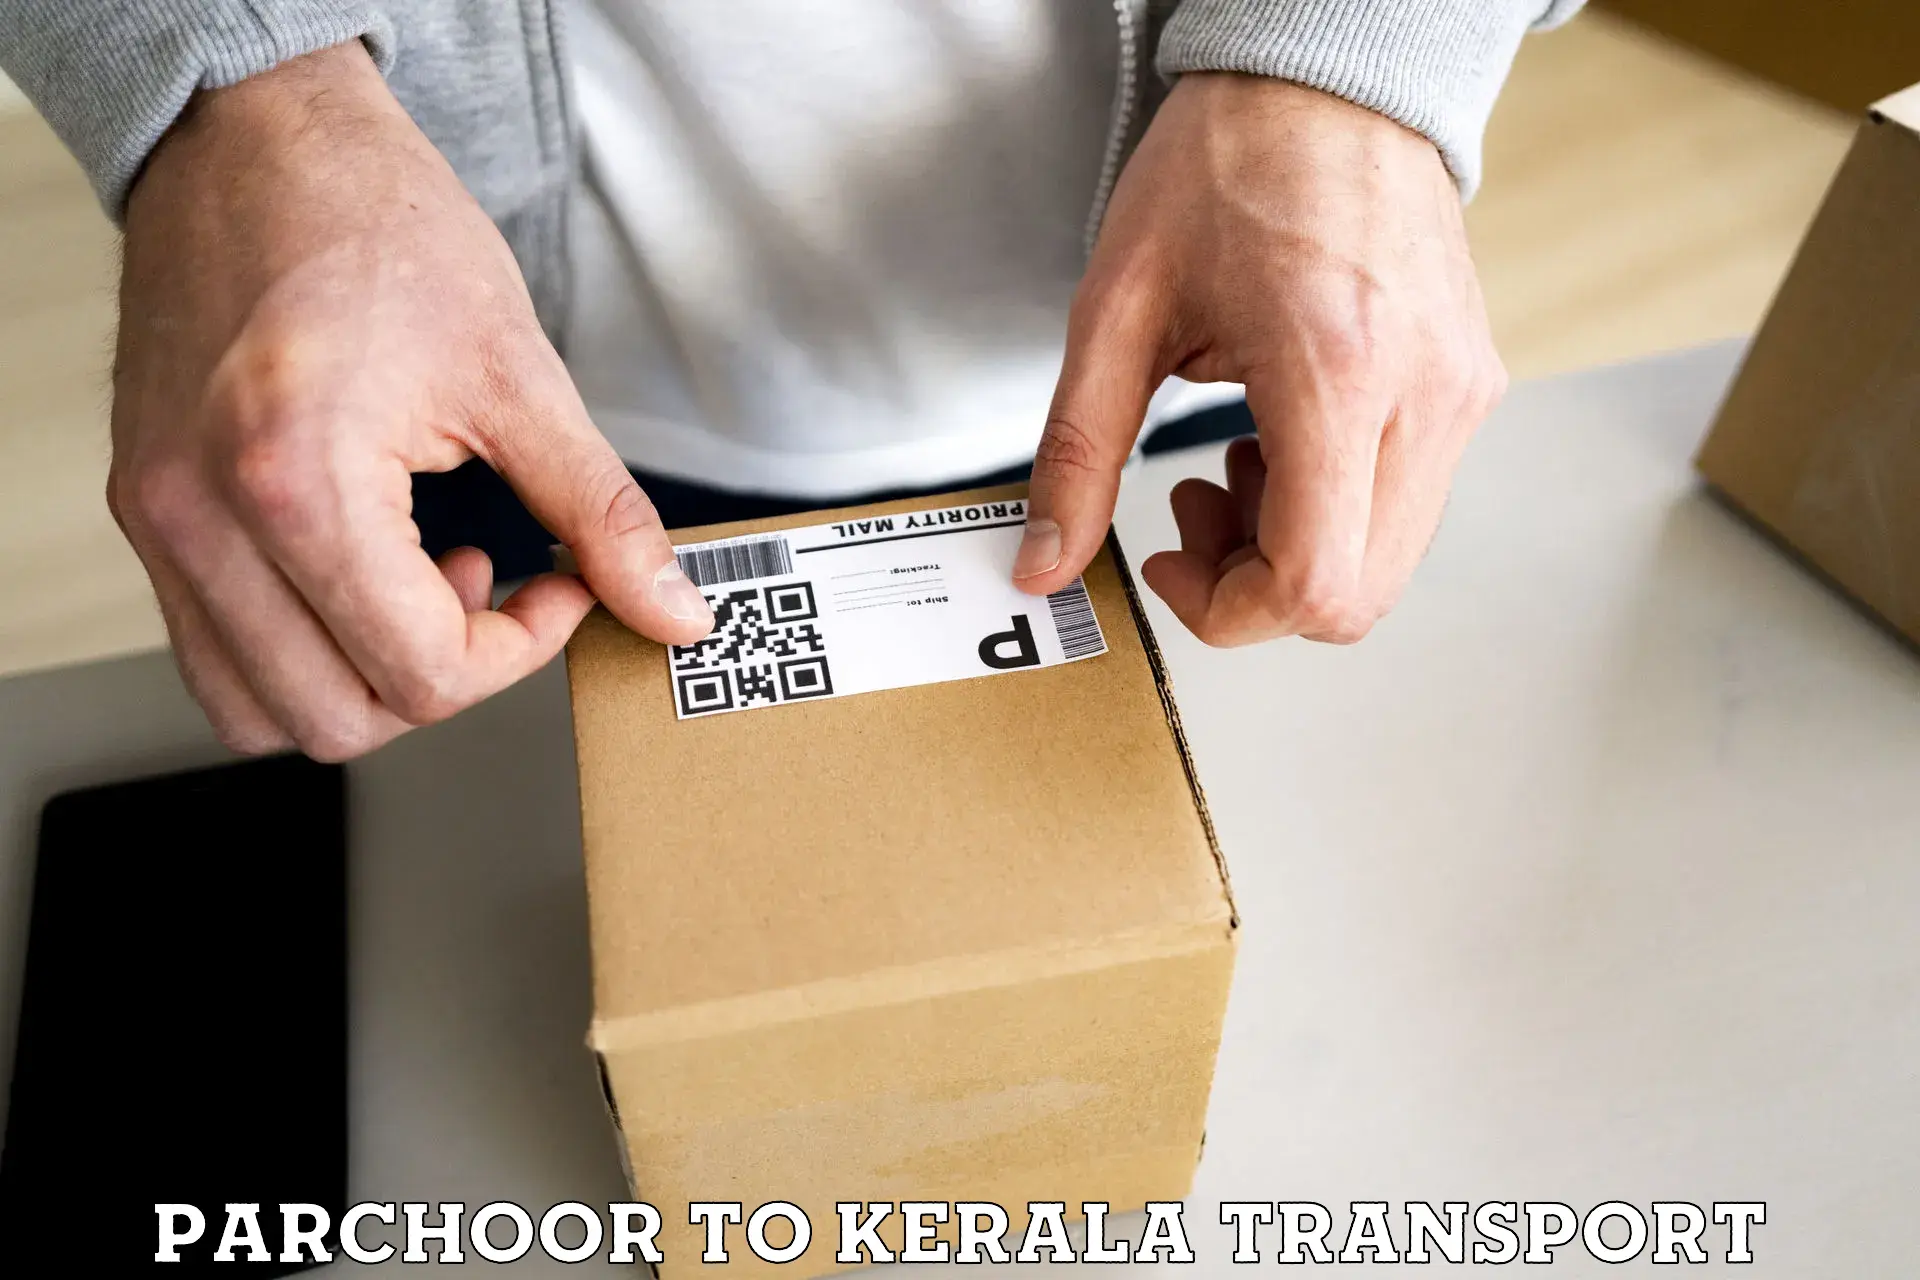 Online transport service Parchoor to Kerala